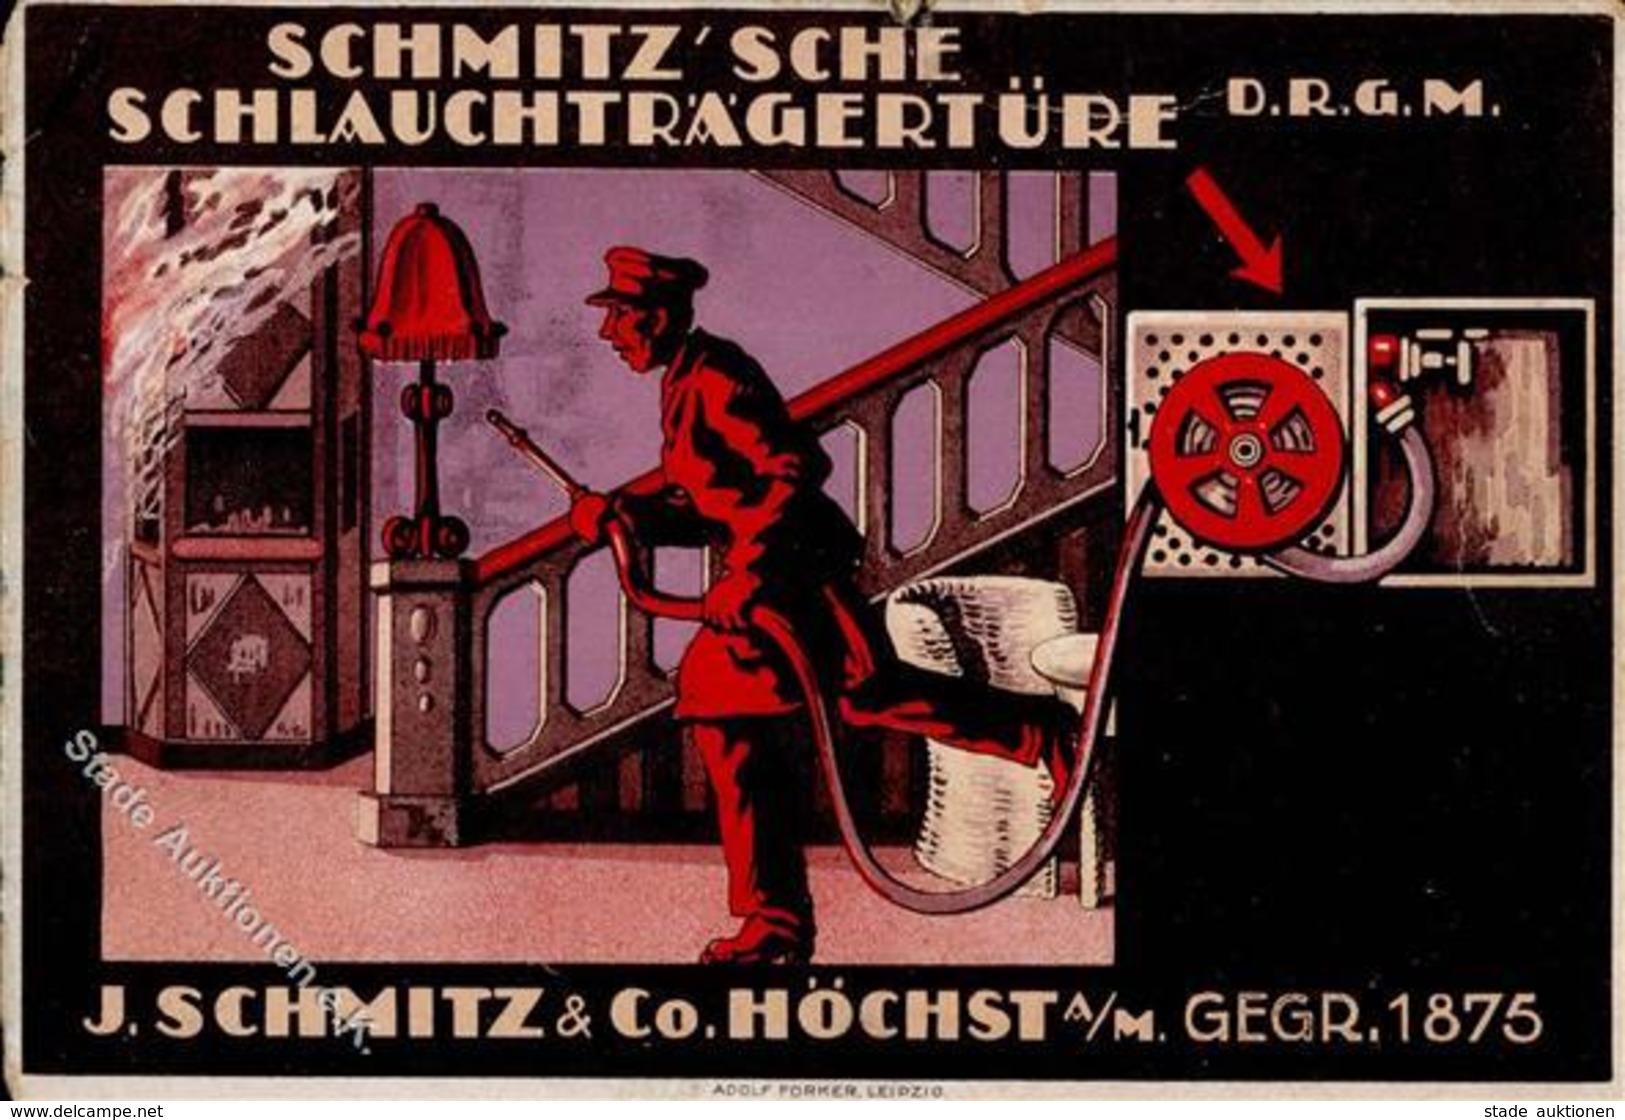 FRANKFURT-HÖCHST - FEUERLÖSCH-ARMATUREN-FABRIK J.Schmitz - Ecken Gestoßen II - Advertising